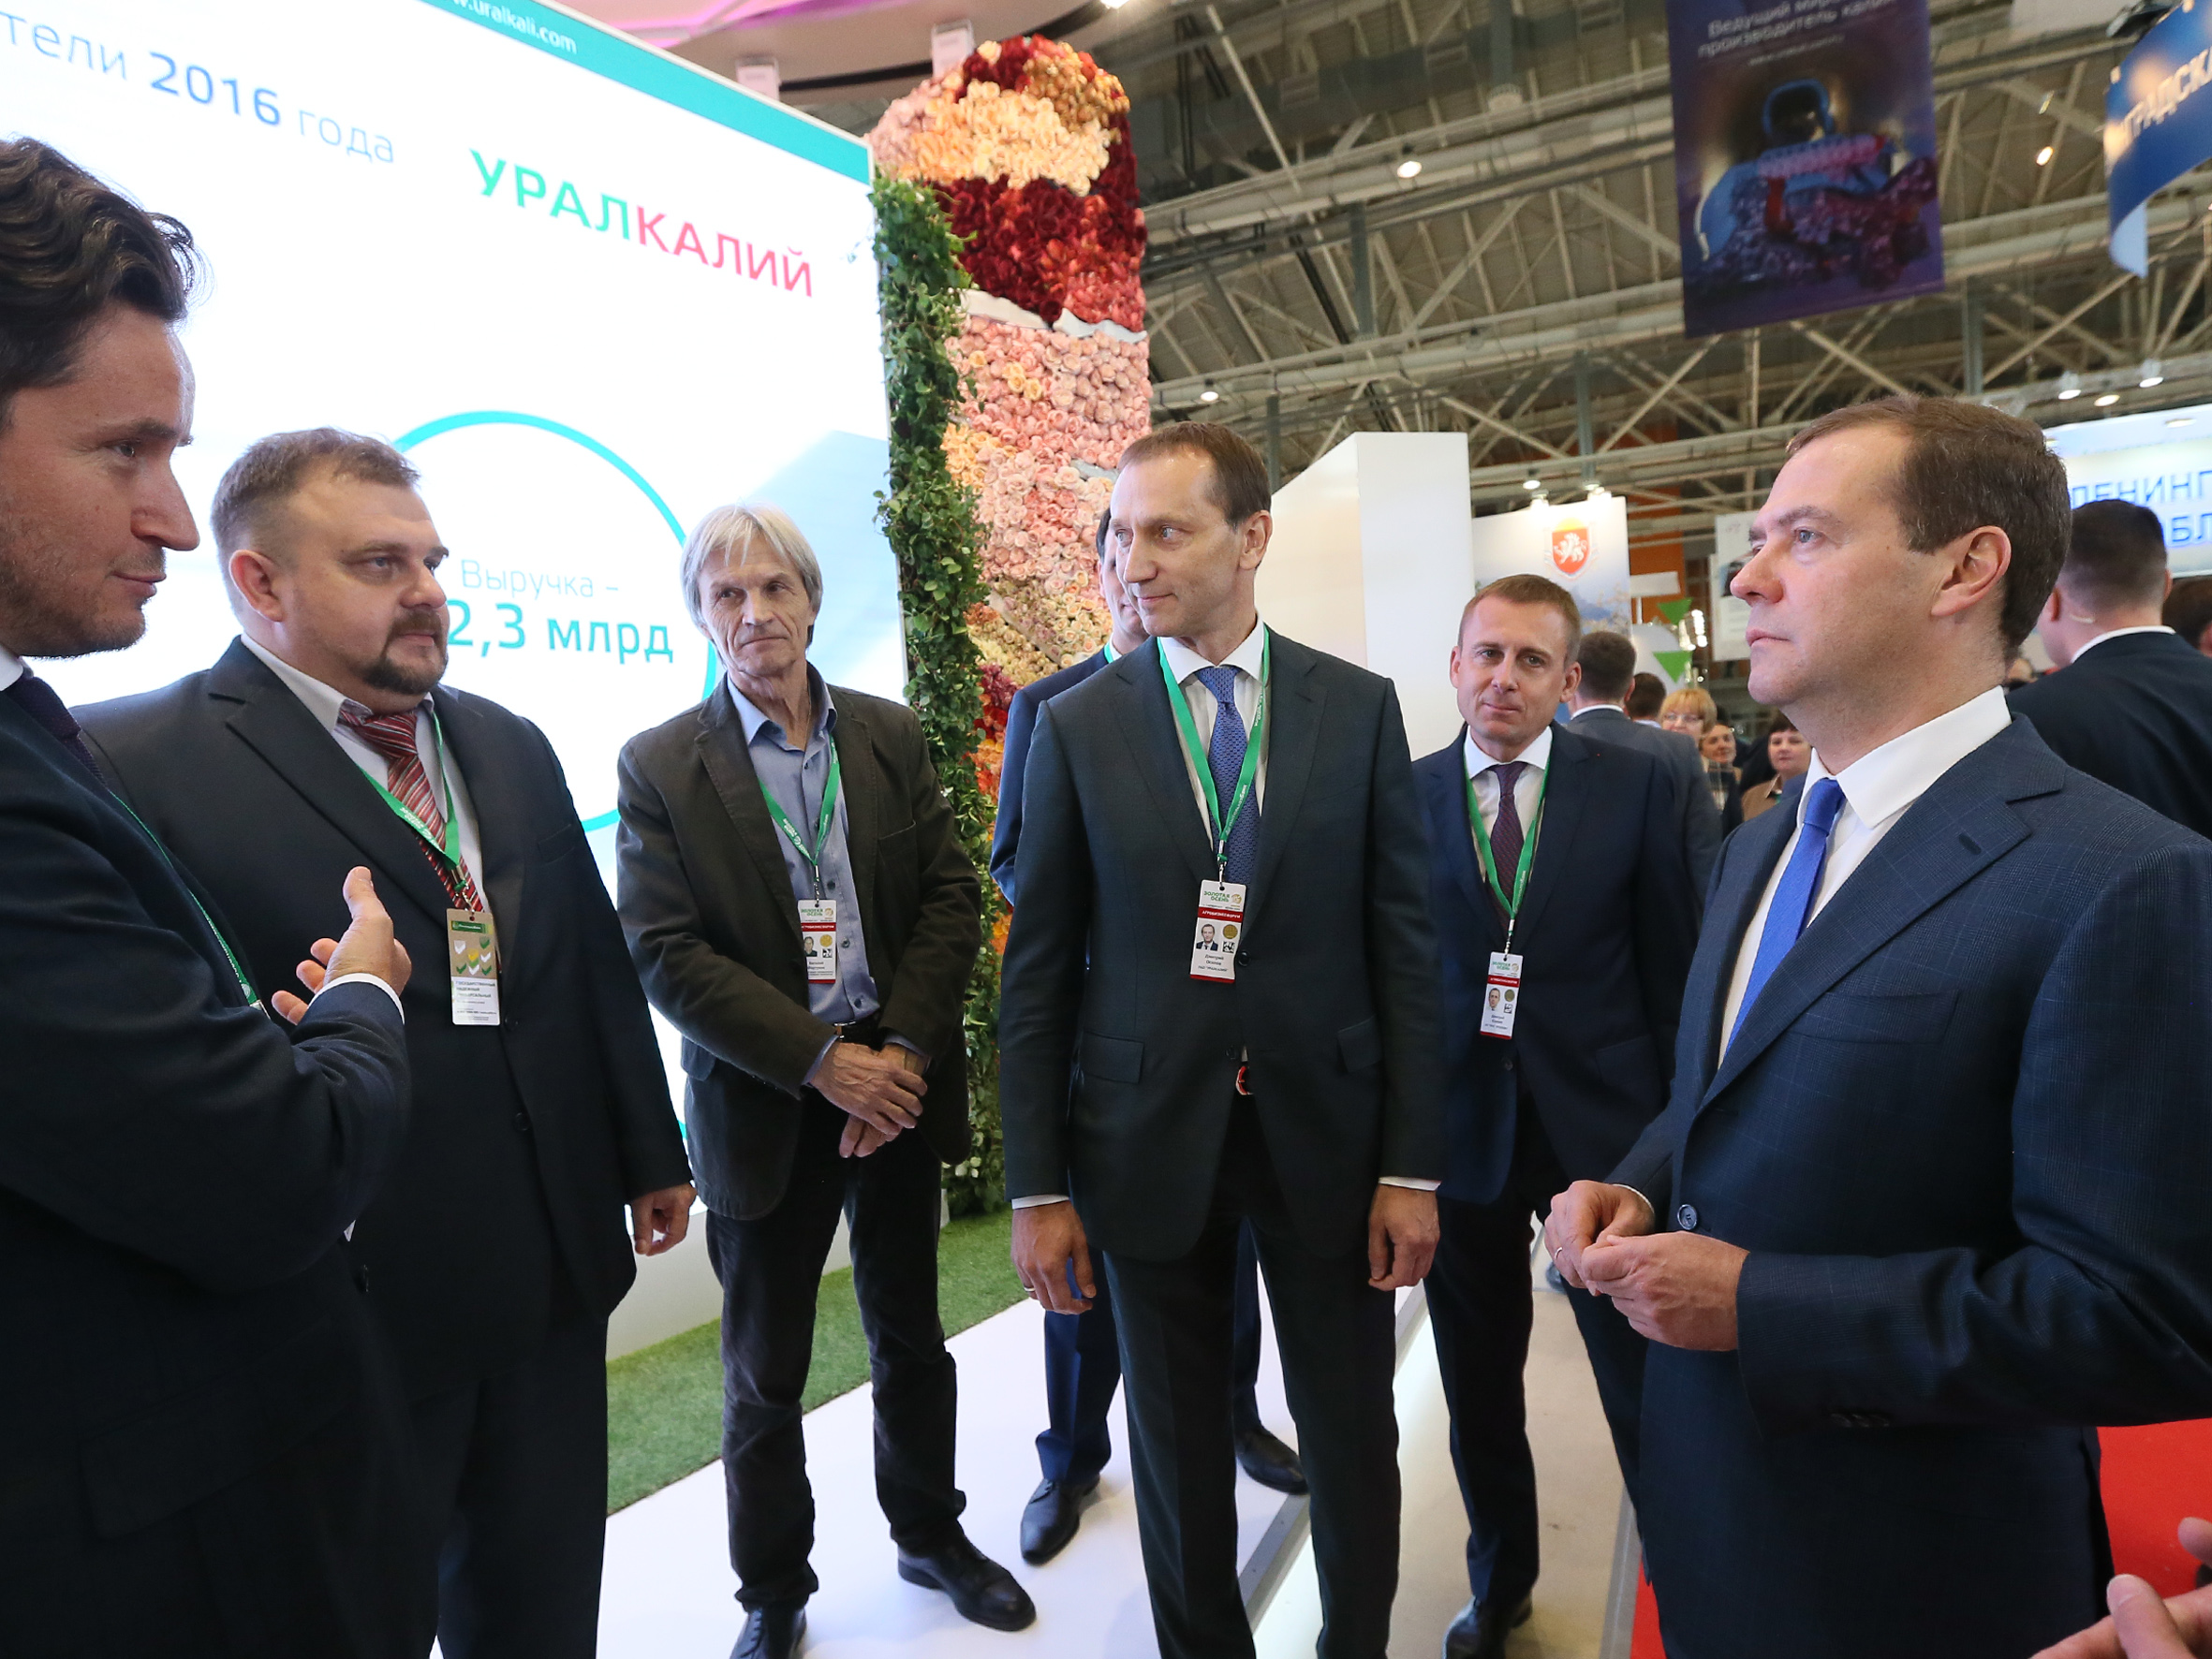 Дмитрий Медведев посетил стенд компании «УРАЛХИМ» на выставке «Золотая осень» и ознакомился с инновационными проектами Фонда «Сколково»